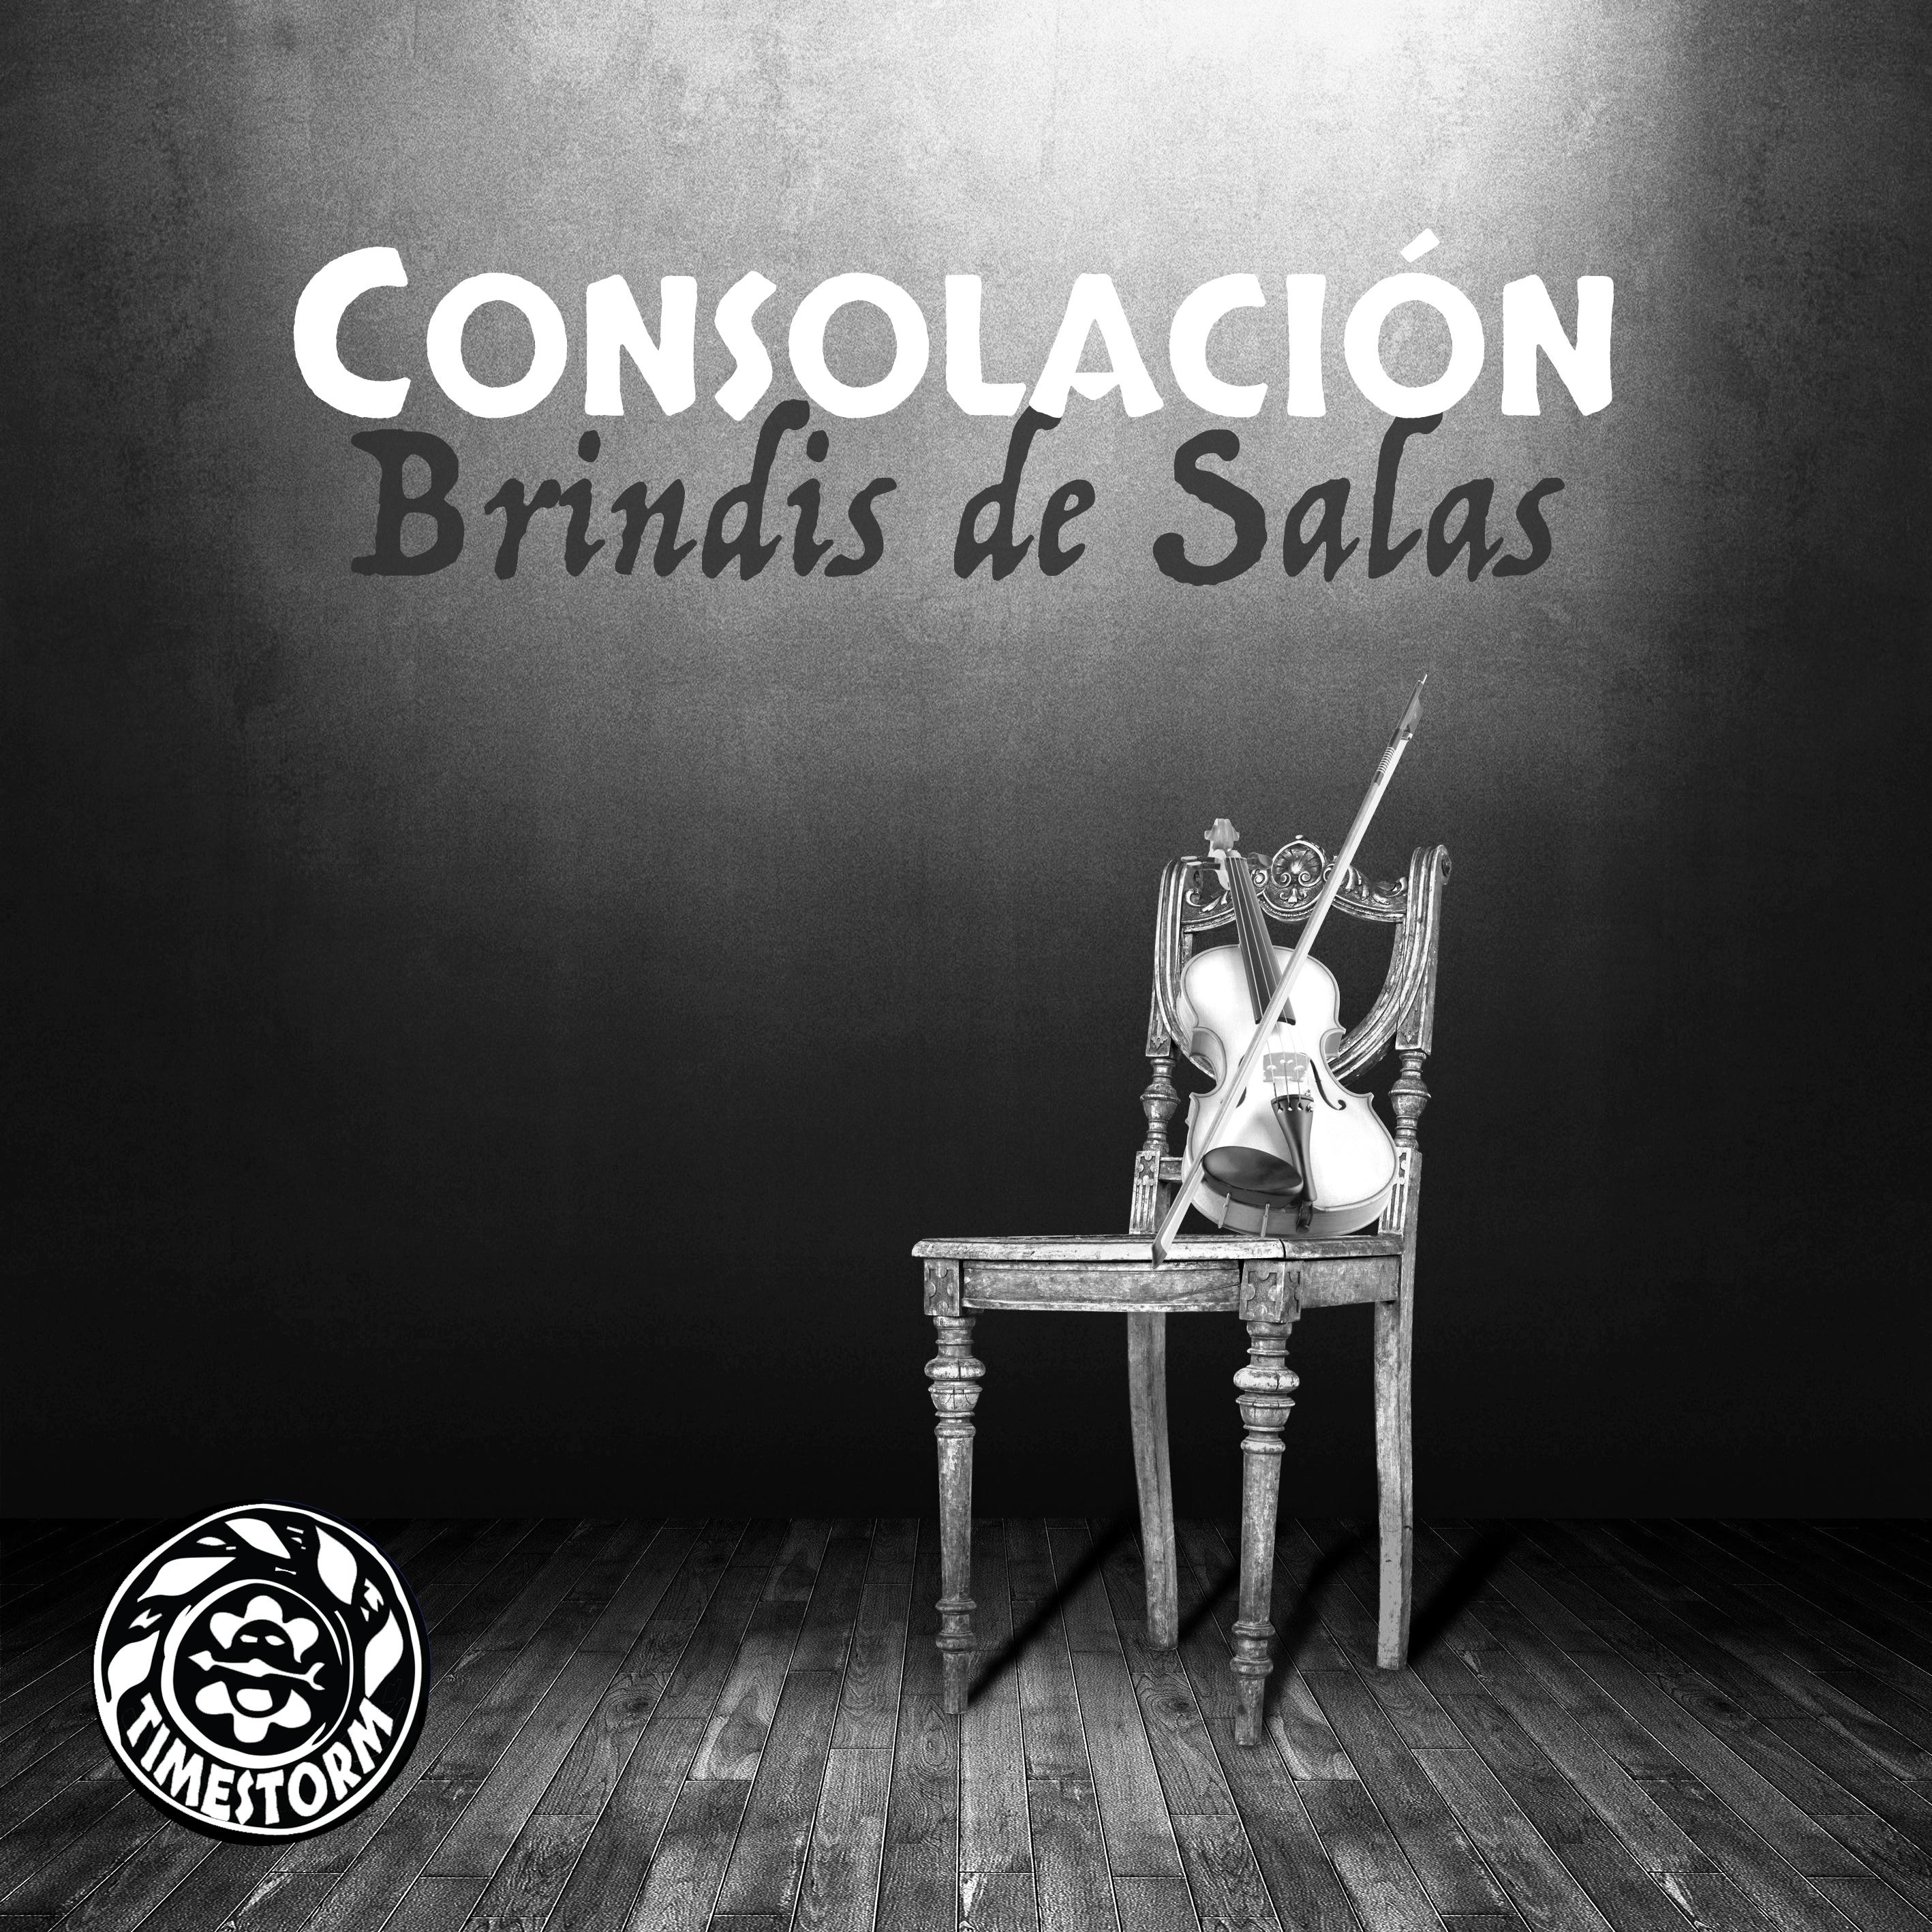 Thumbnail for "Bonus: Consolación by Claudio Brindis de Salas".